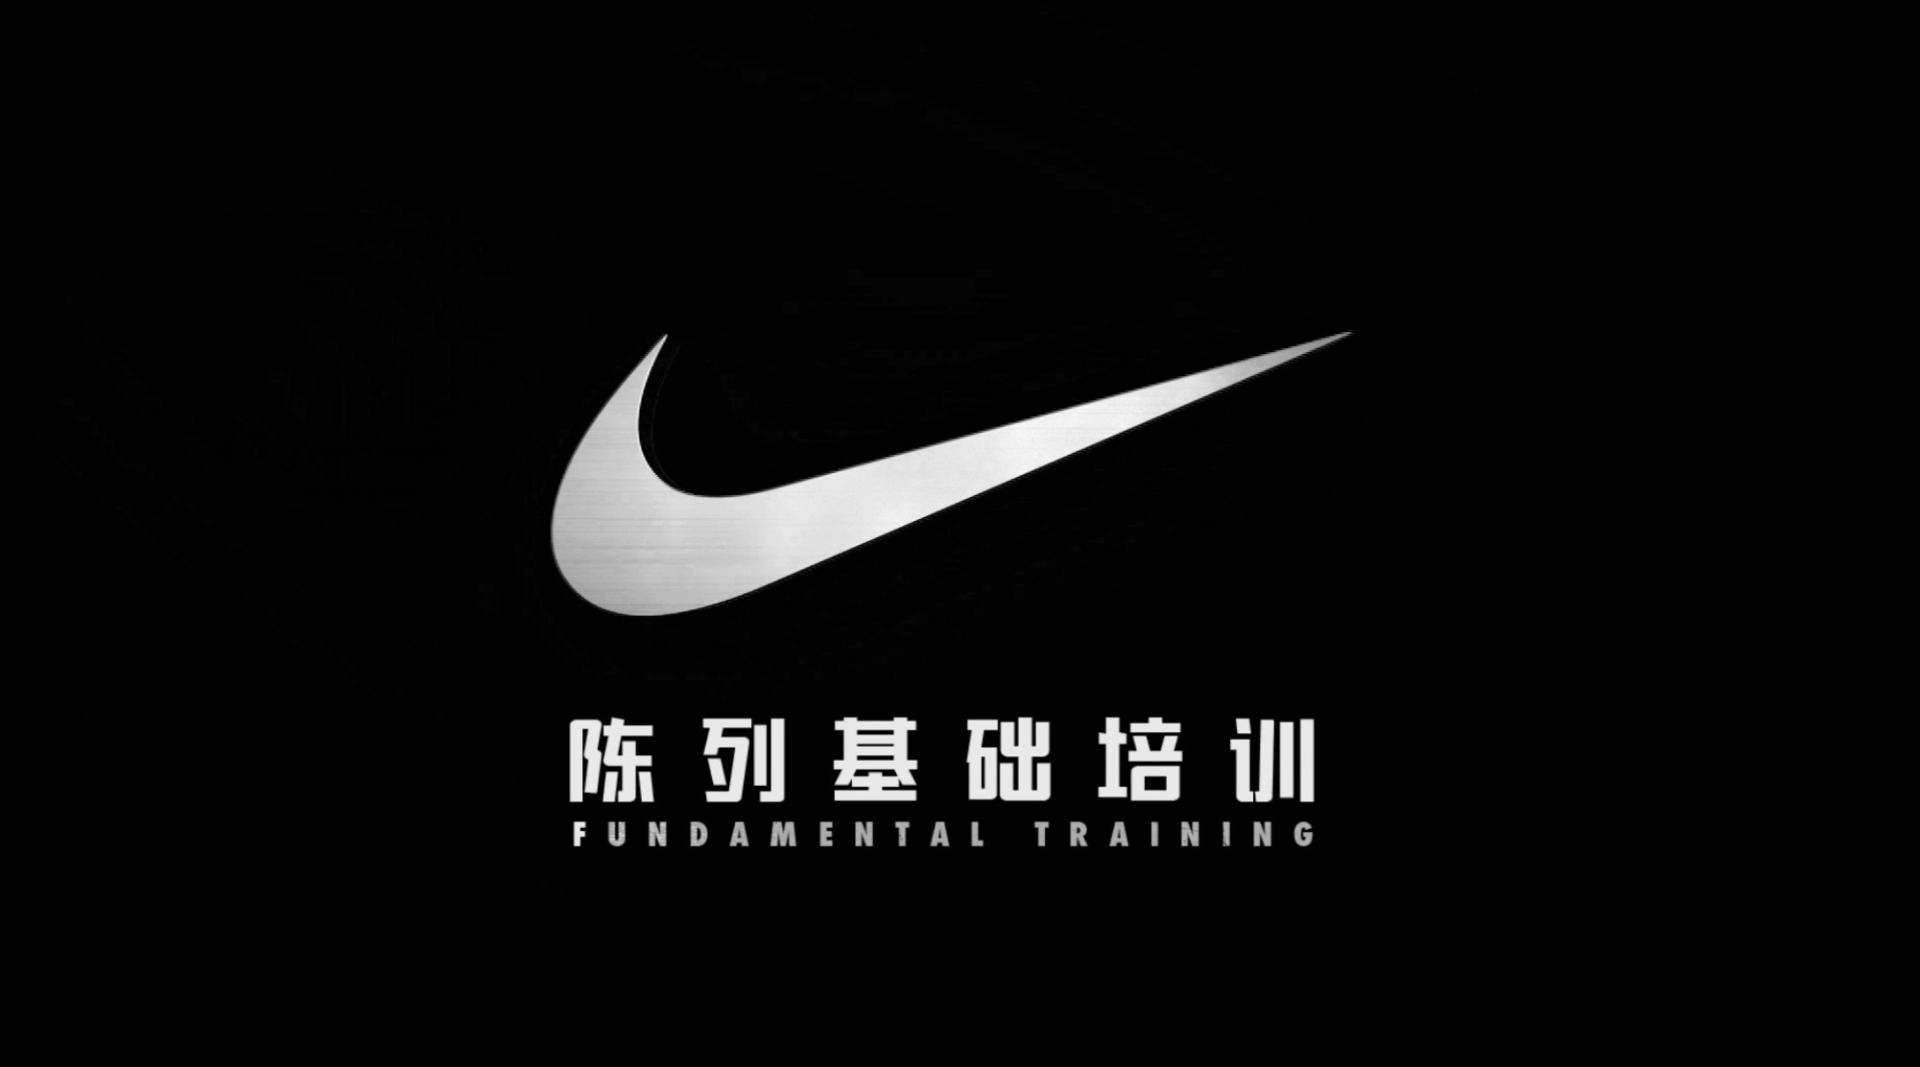 Nike 内部视觉陈列基础培训